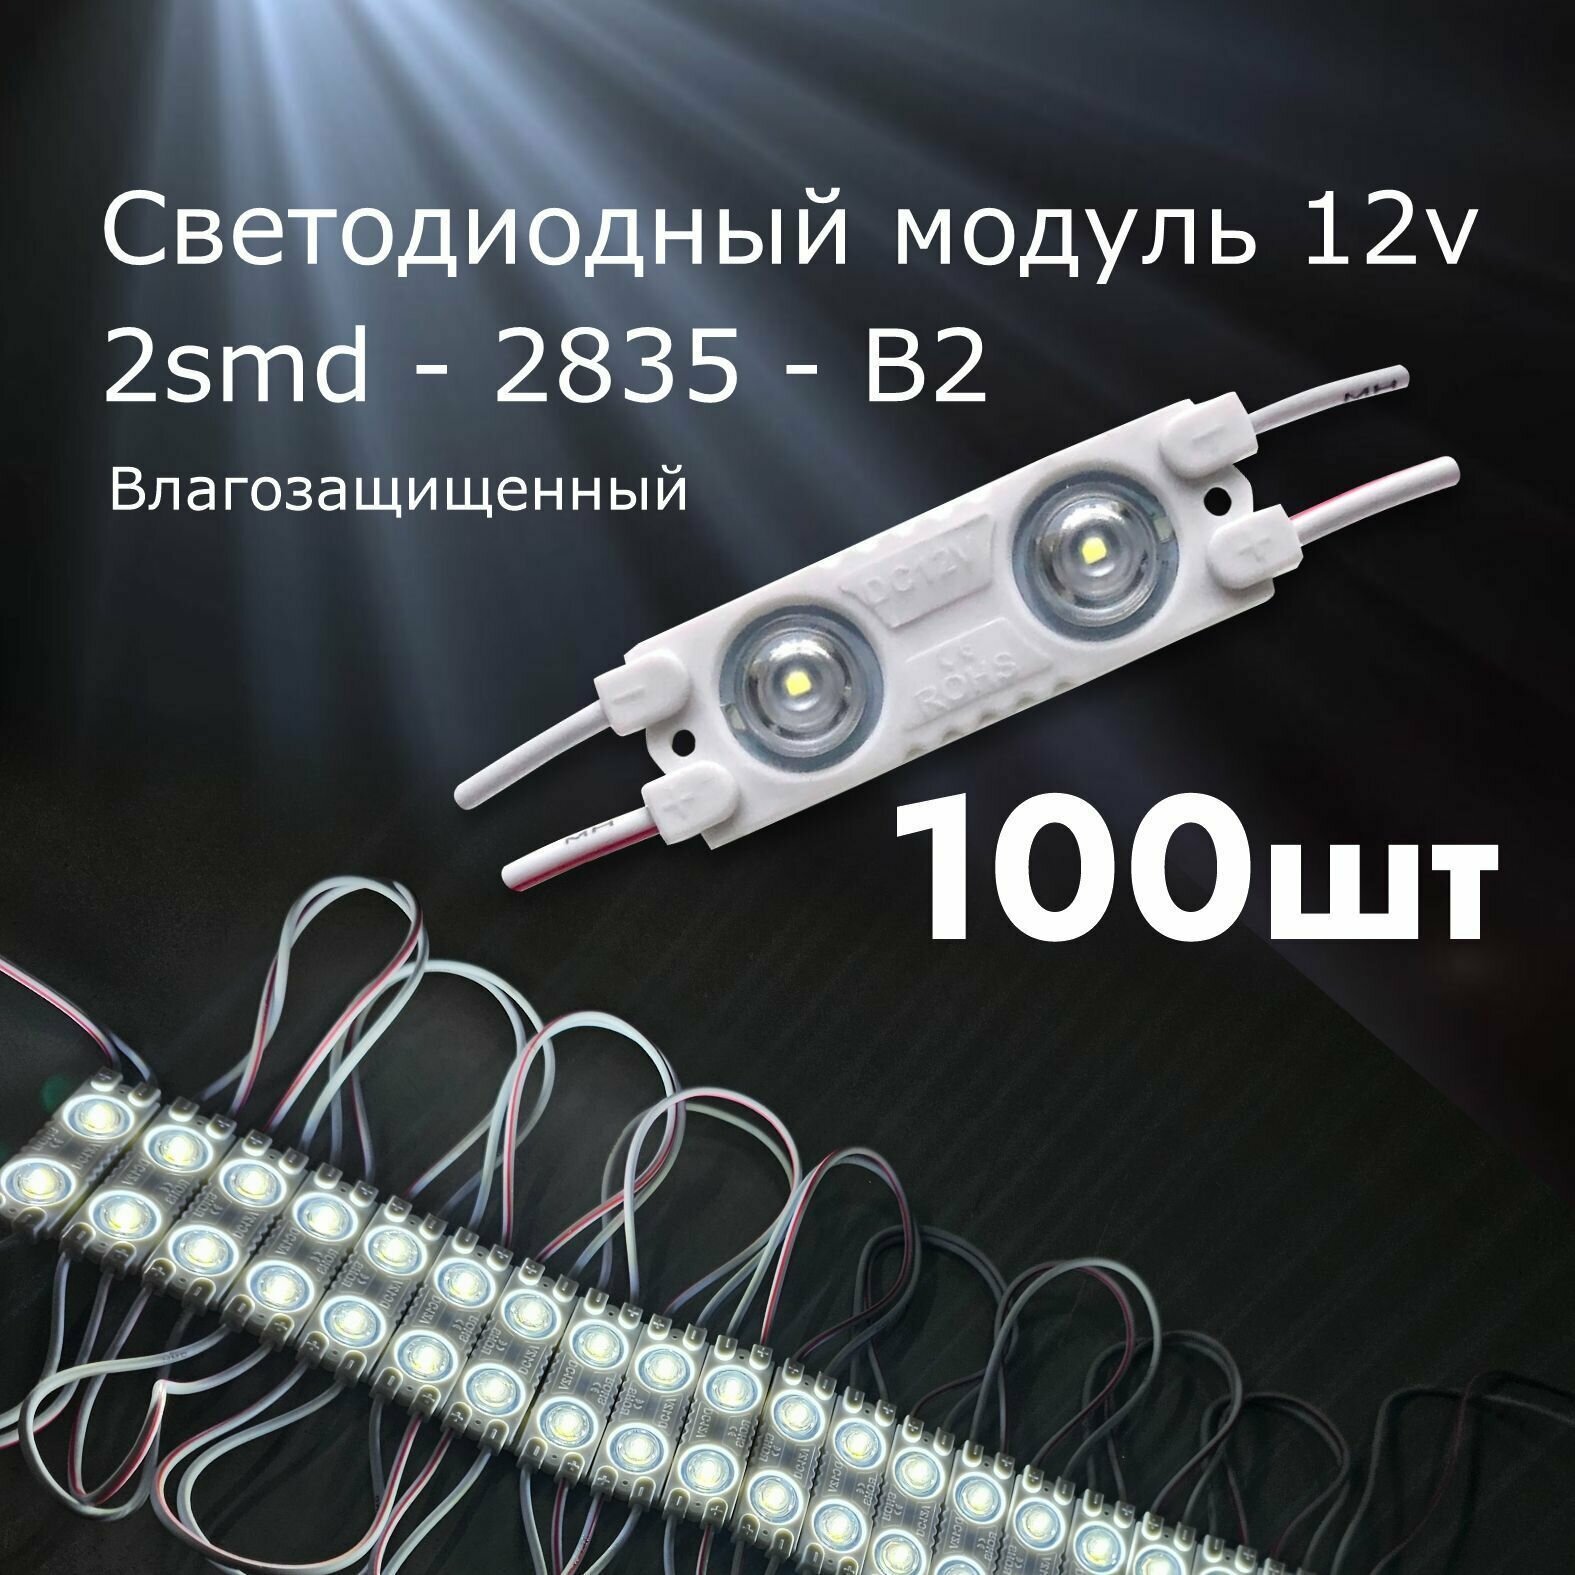 100 штук Светодиодный модуль LED модуль 2-2835-В2 ( 2смд)